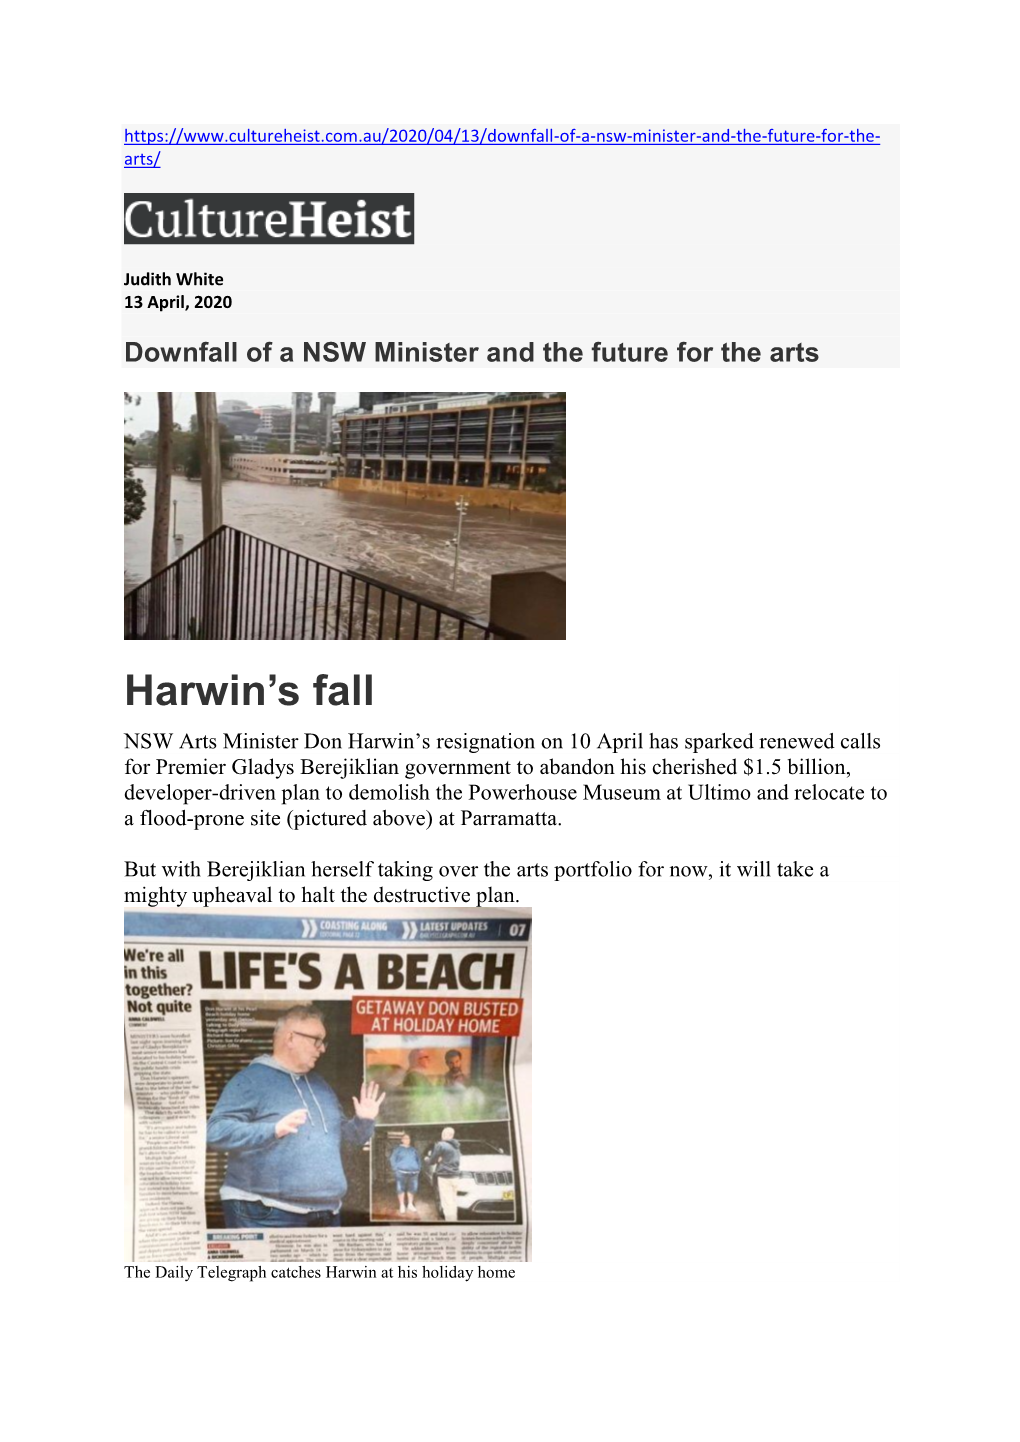 Harwin's Fall